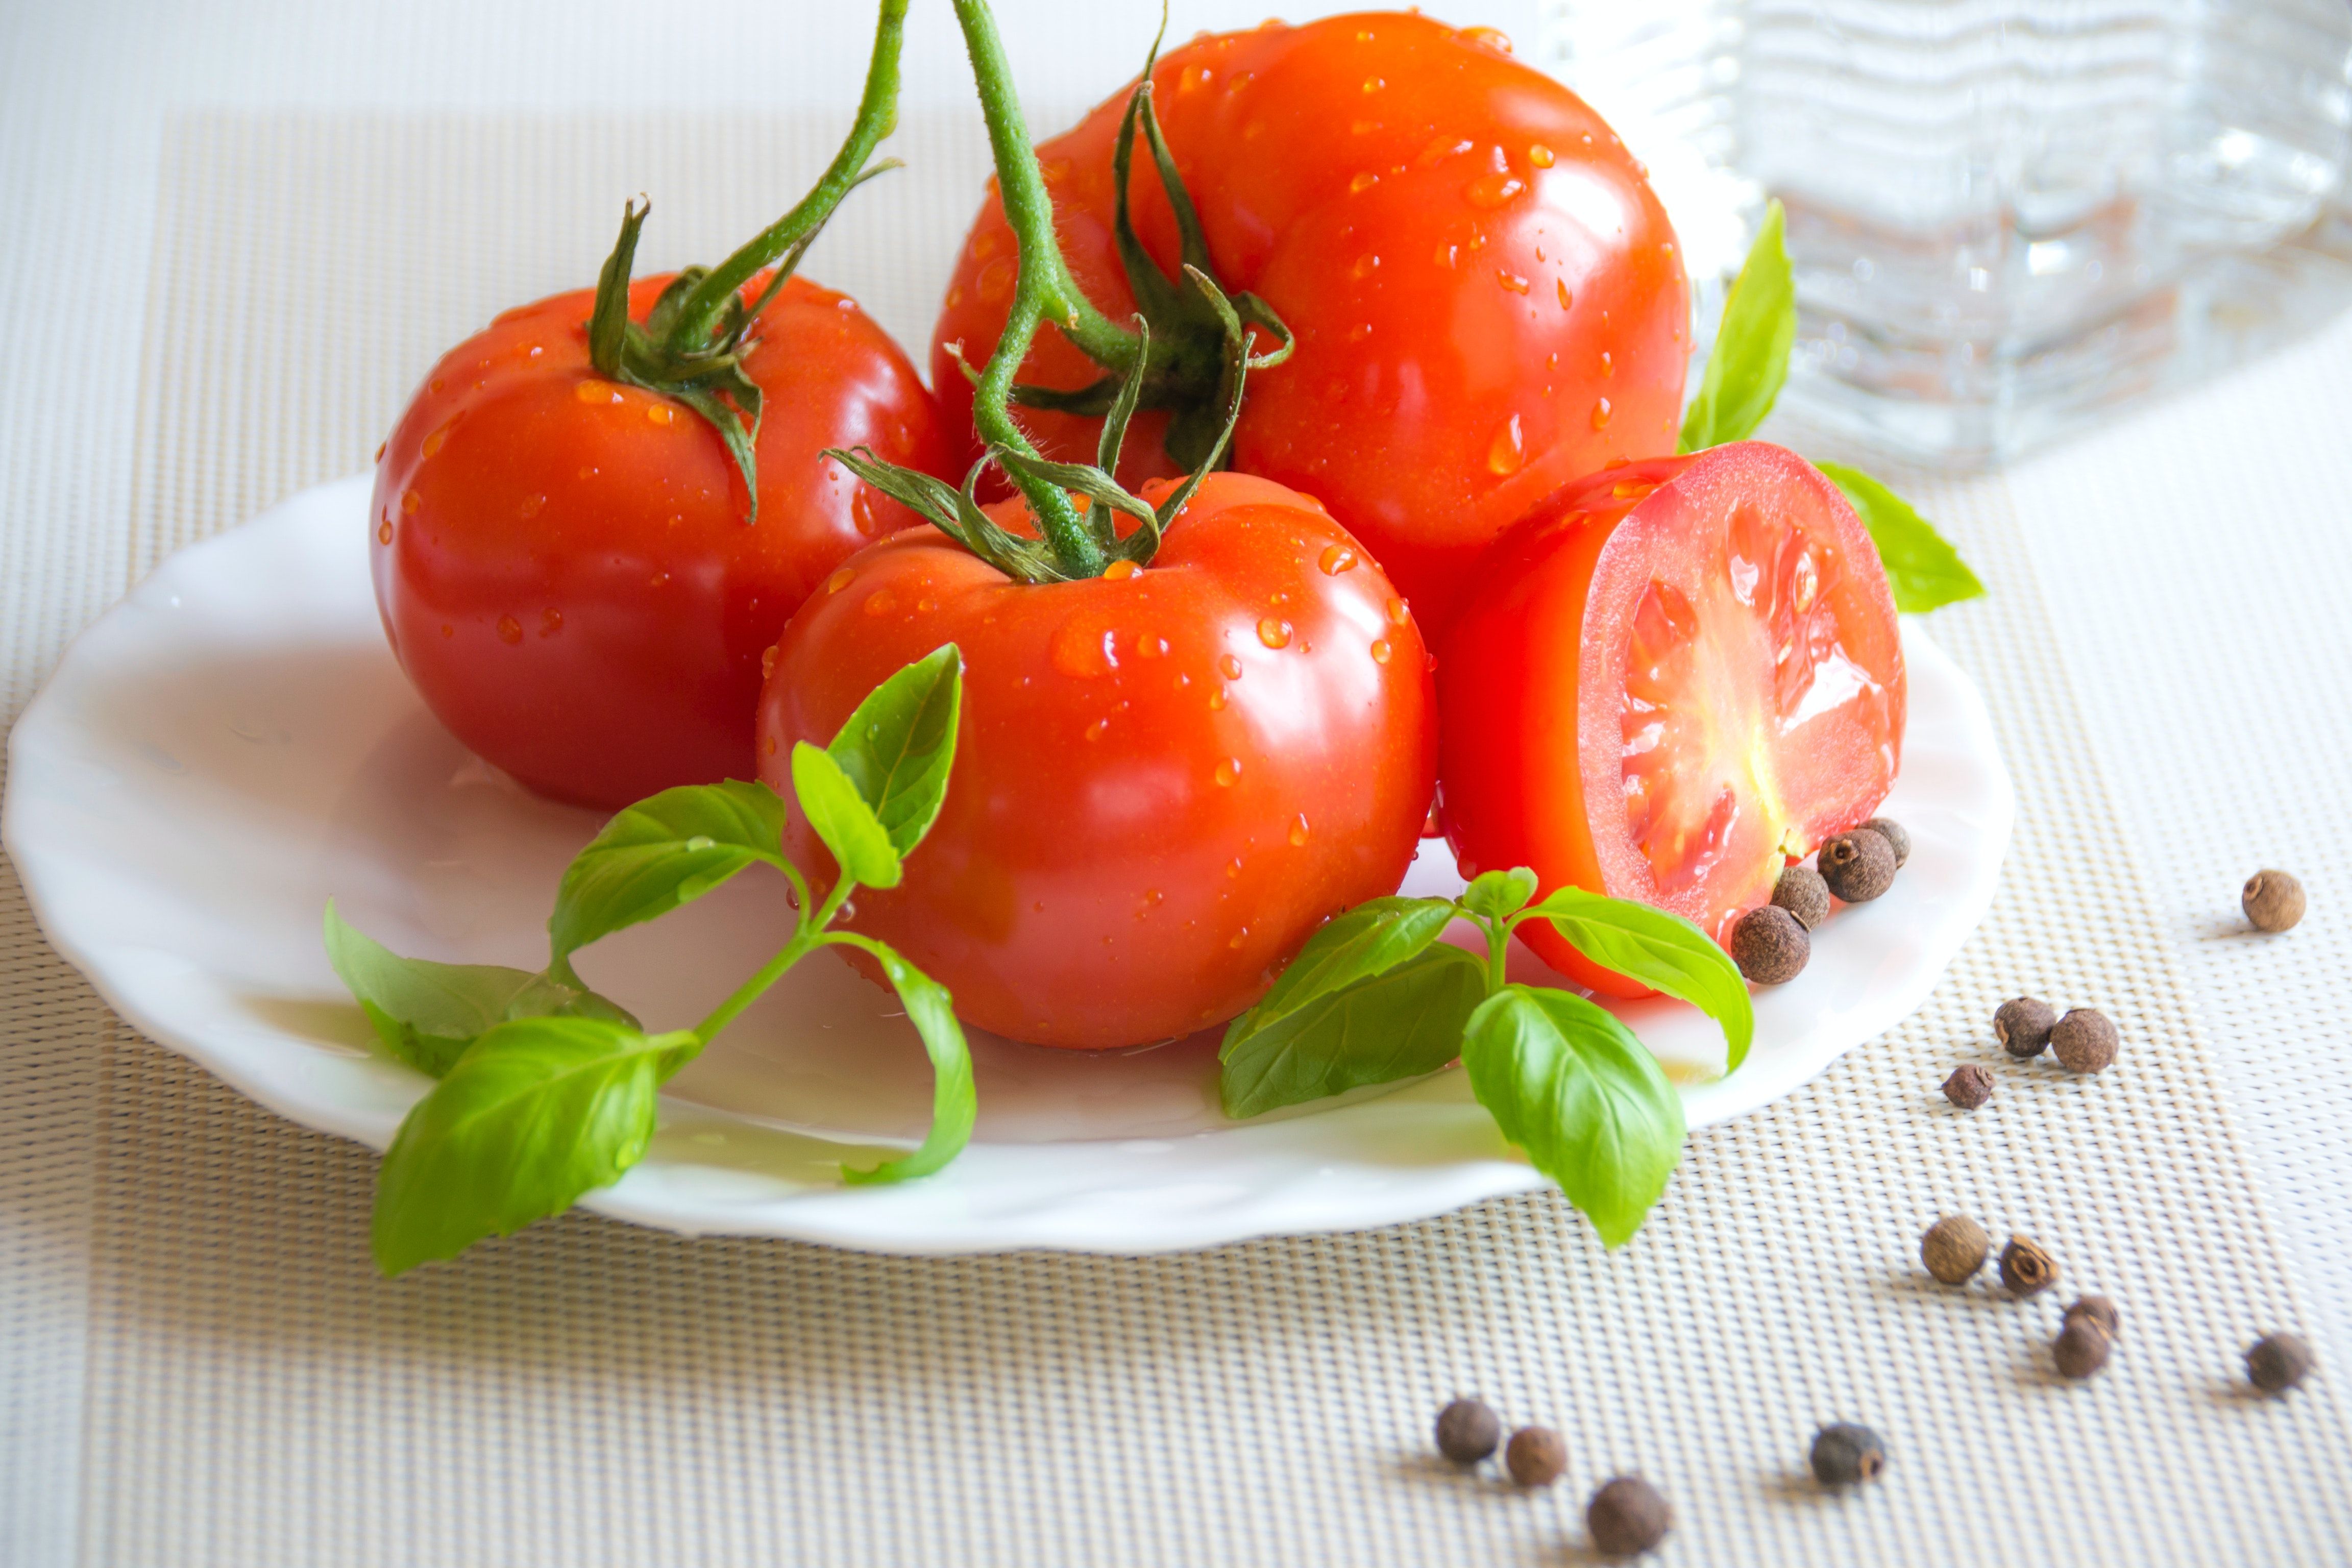 Tomatoes транскрипция. Красивые помидоры. Помидоры на тарелке. Сочный томат. Помидоры свежие.